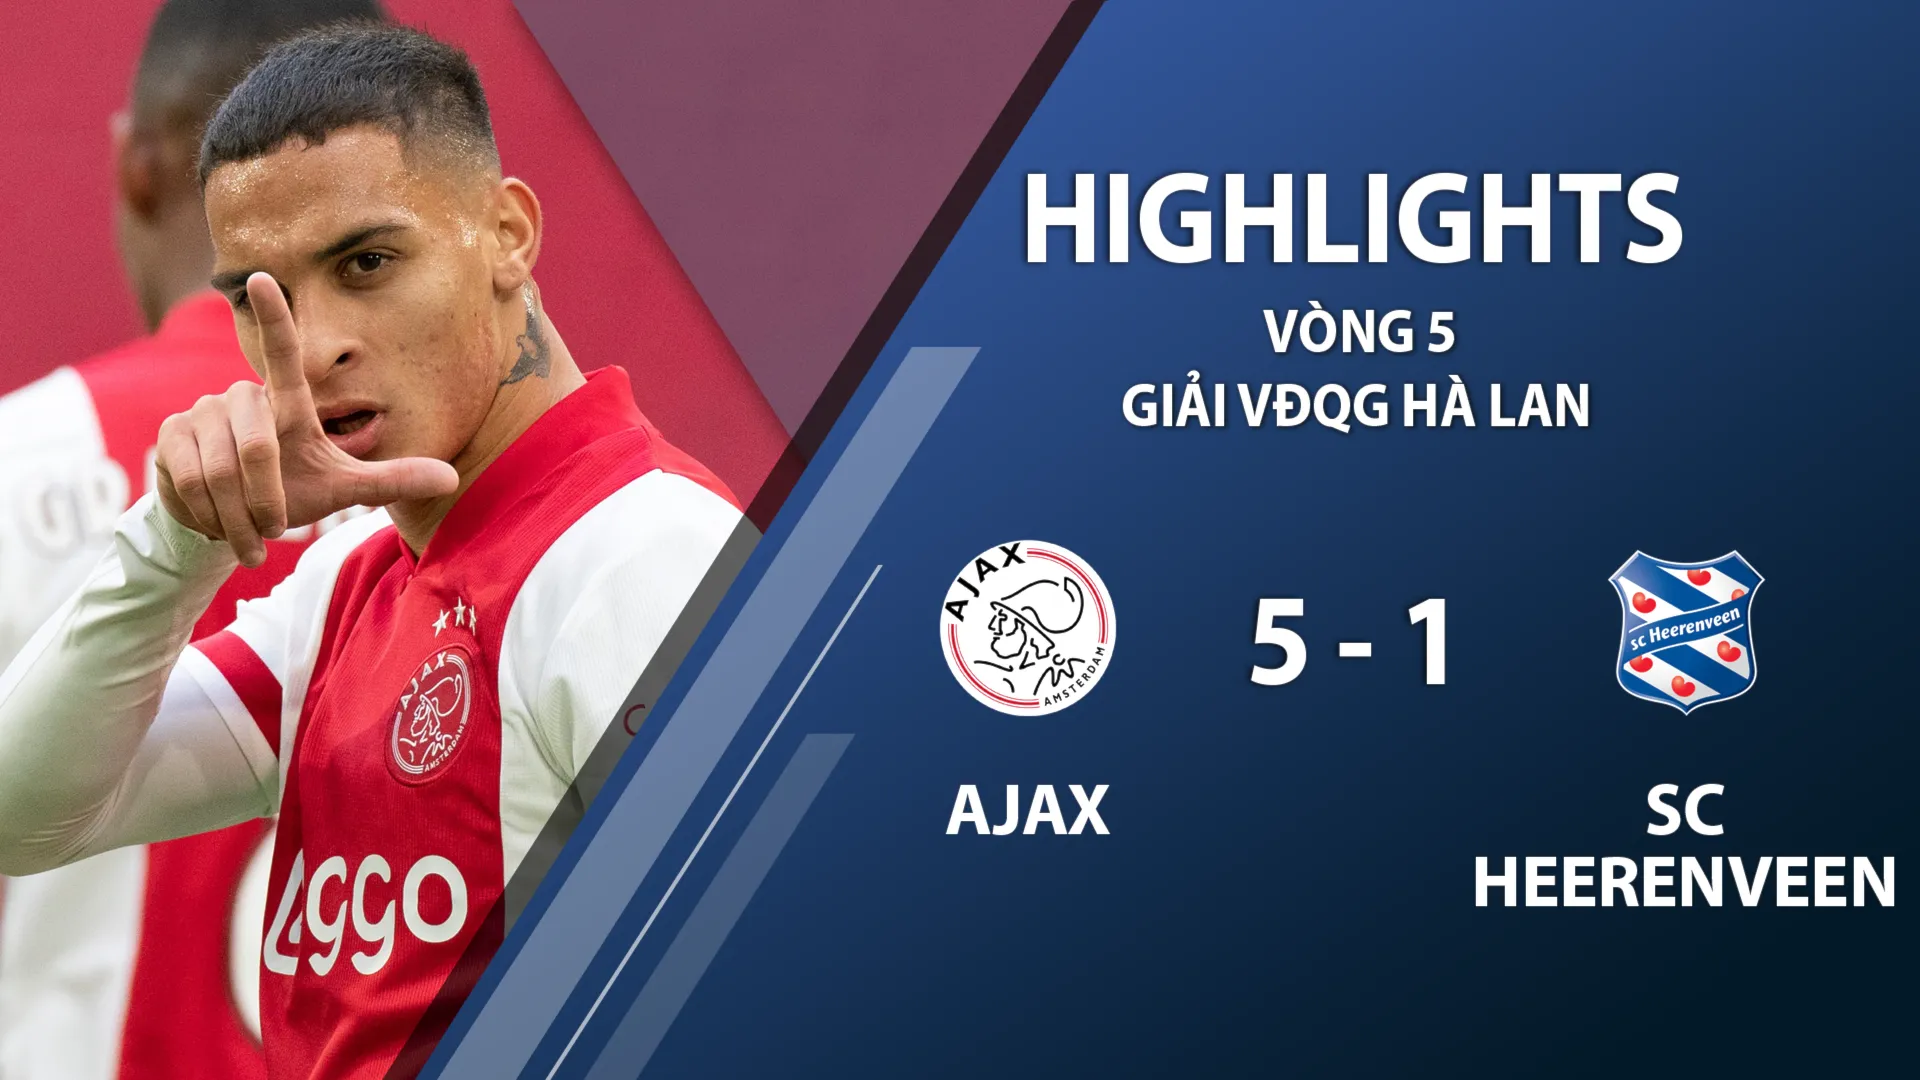 Highlights Ajax 5-1 SC Heerenveen (vòng 5 giải VĐQG Hà Lan 2020/21)	